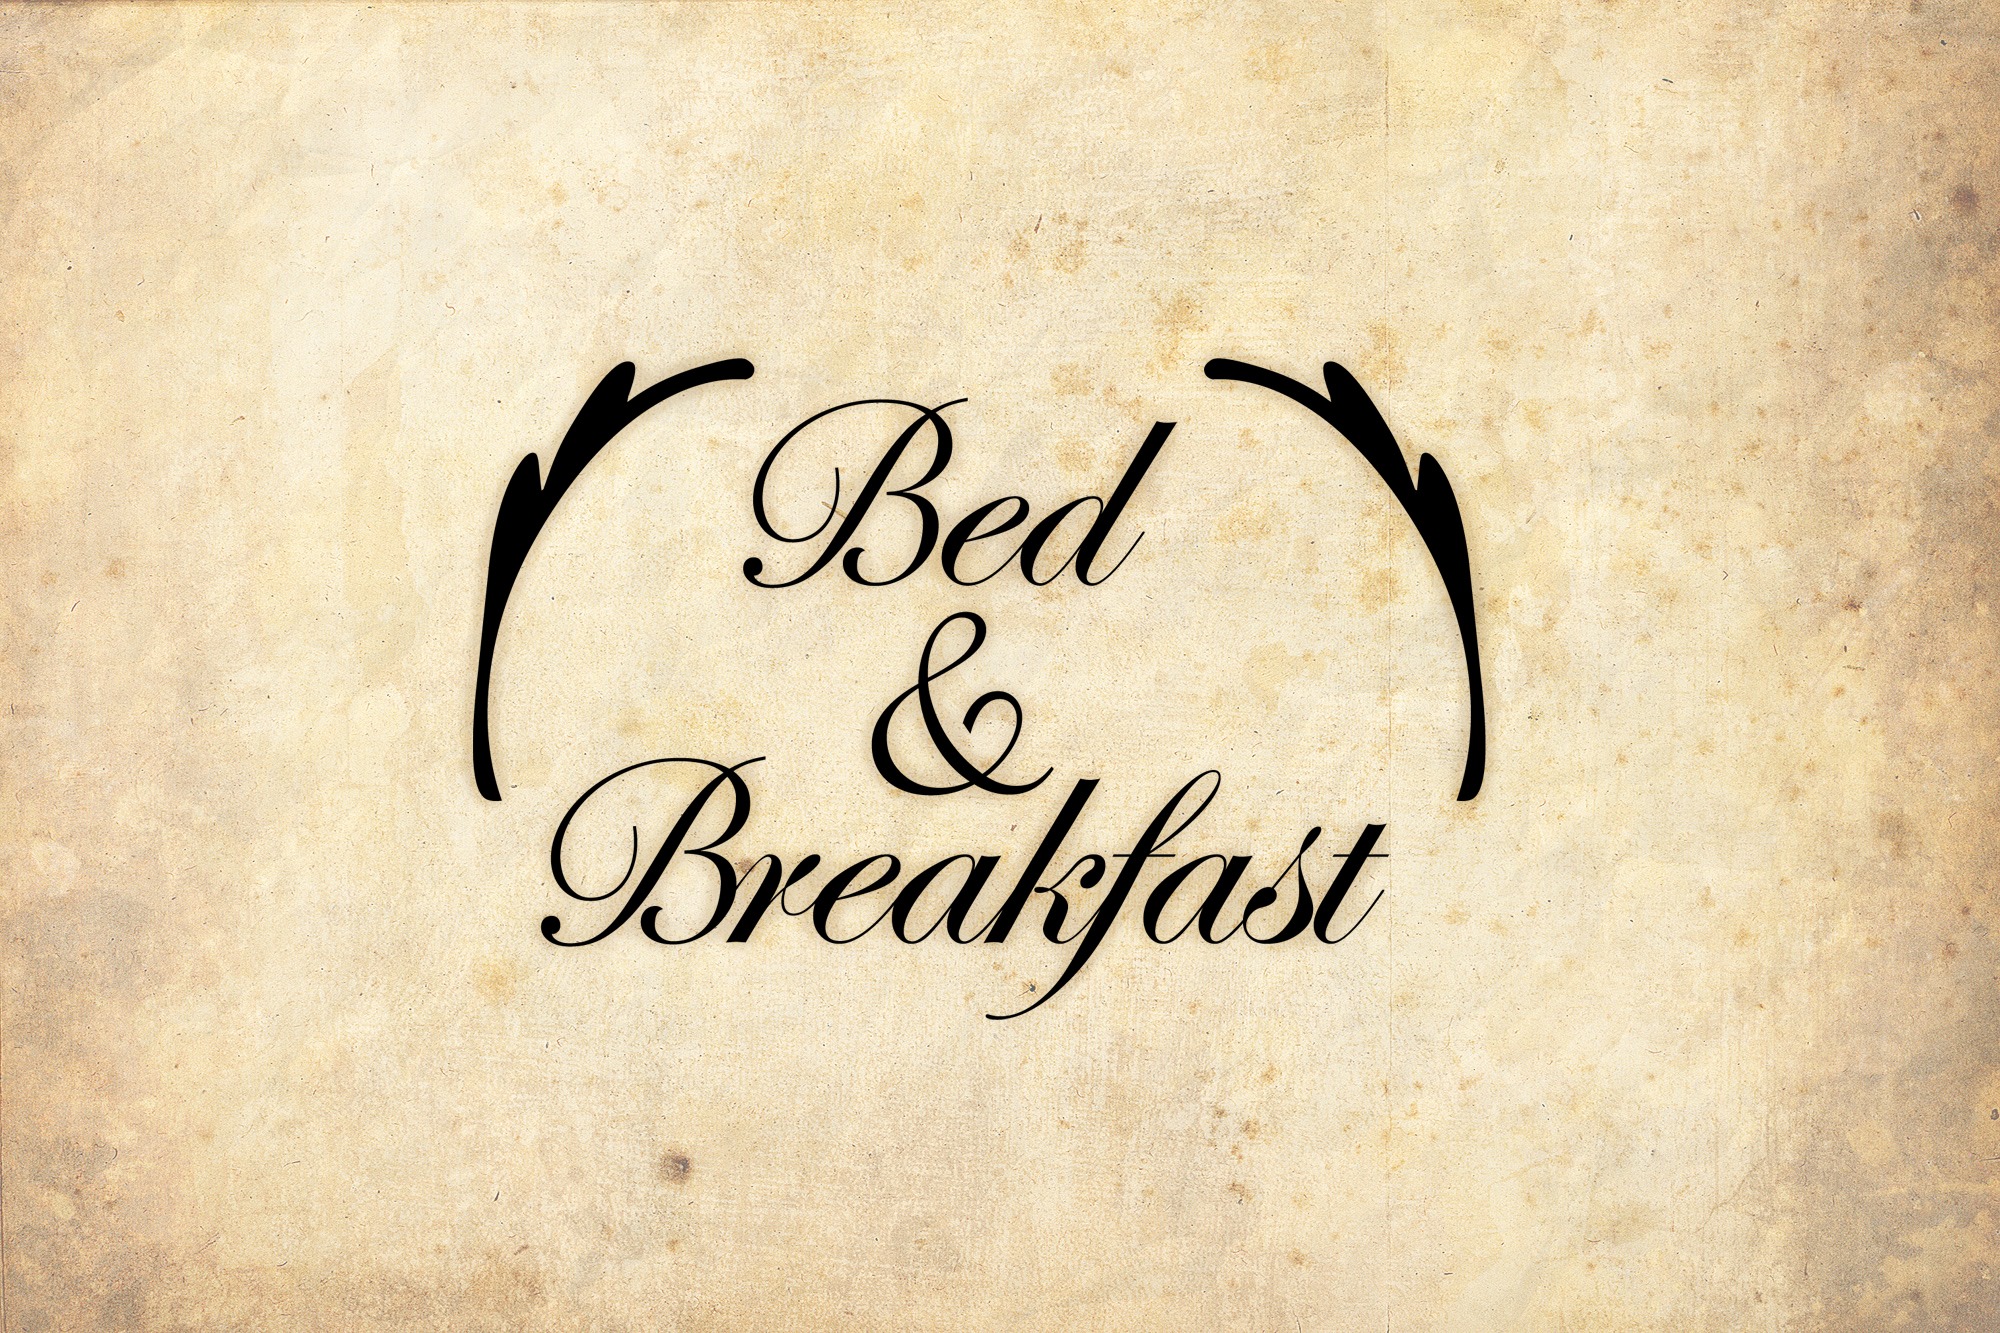 Bed-Breakfast-Omroep-MAX.jpg